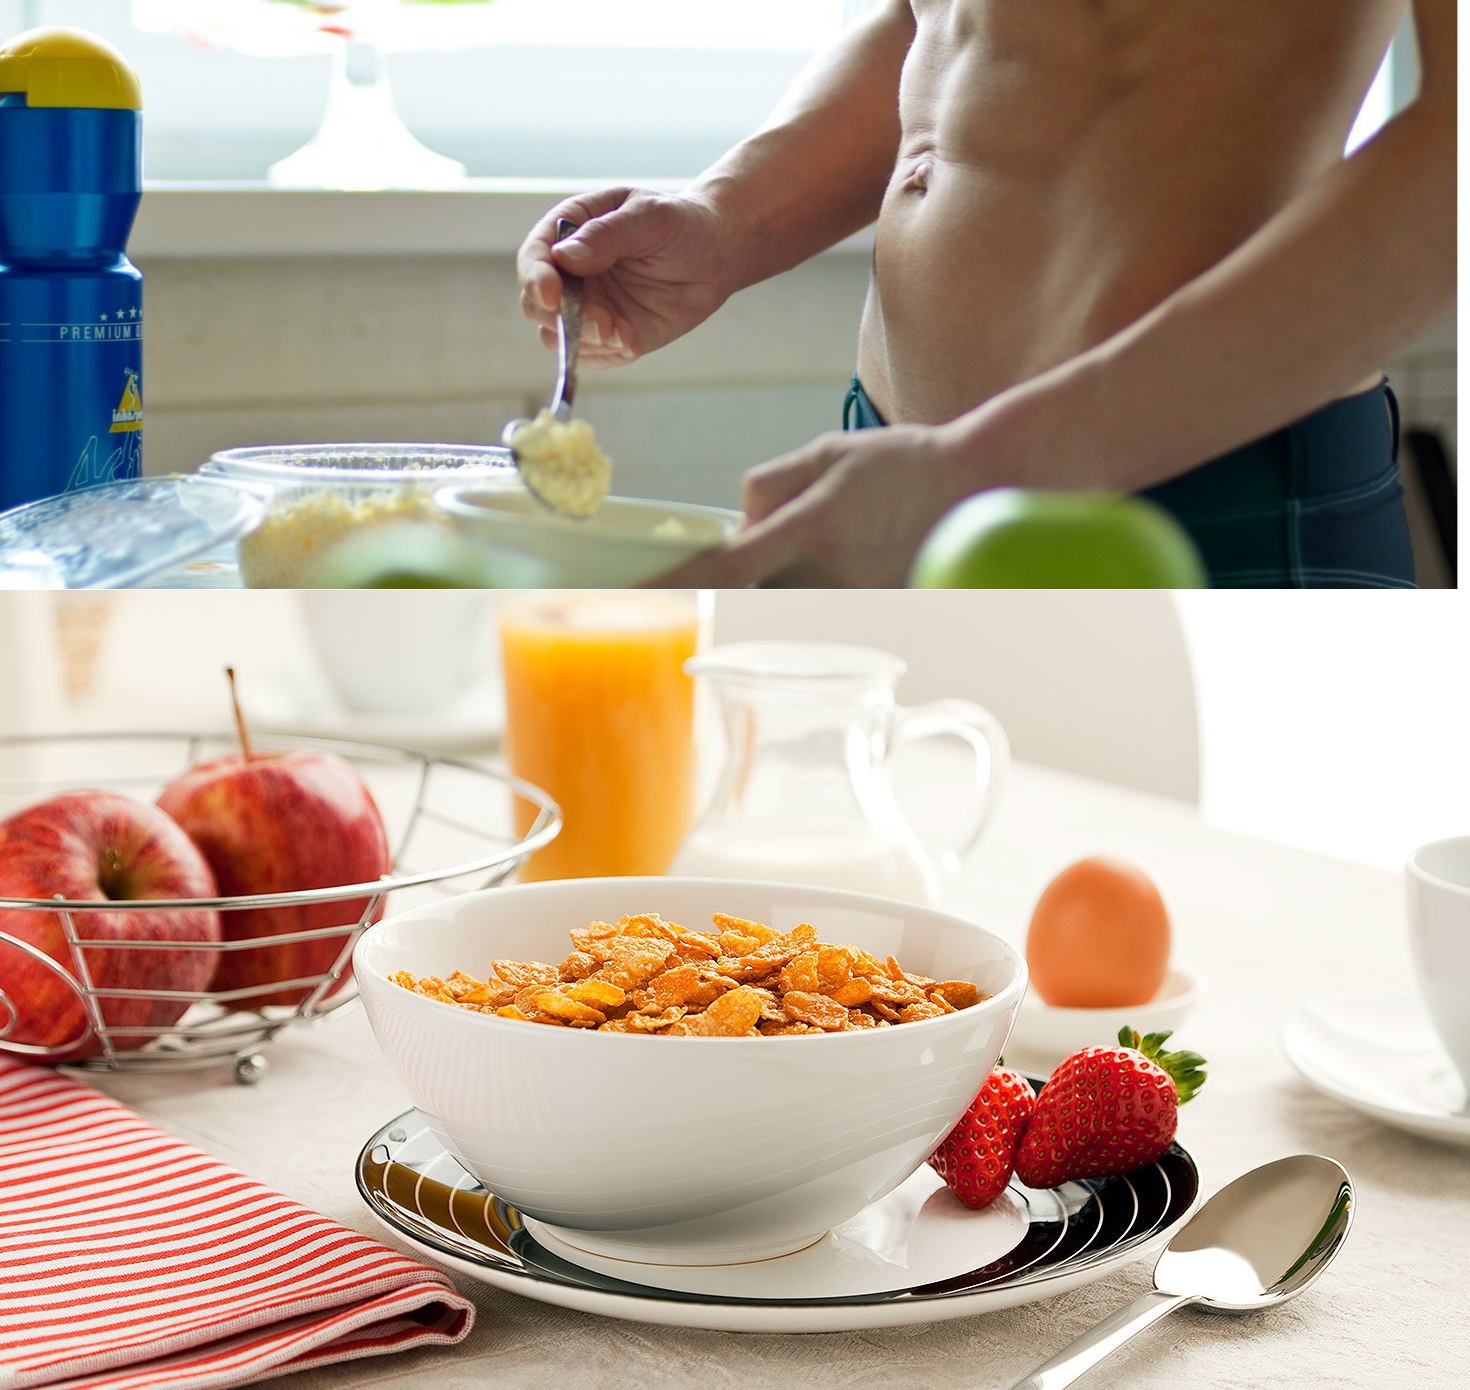 Правильный завтрак - рекомендации диетологов и рецепты блюд